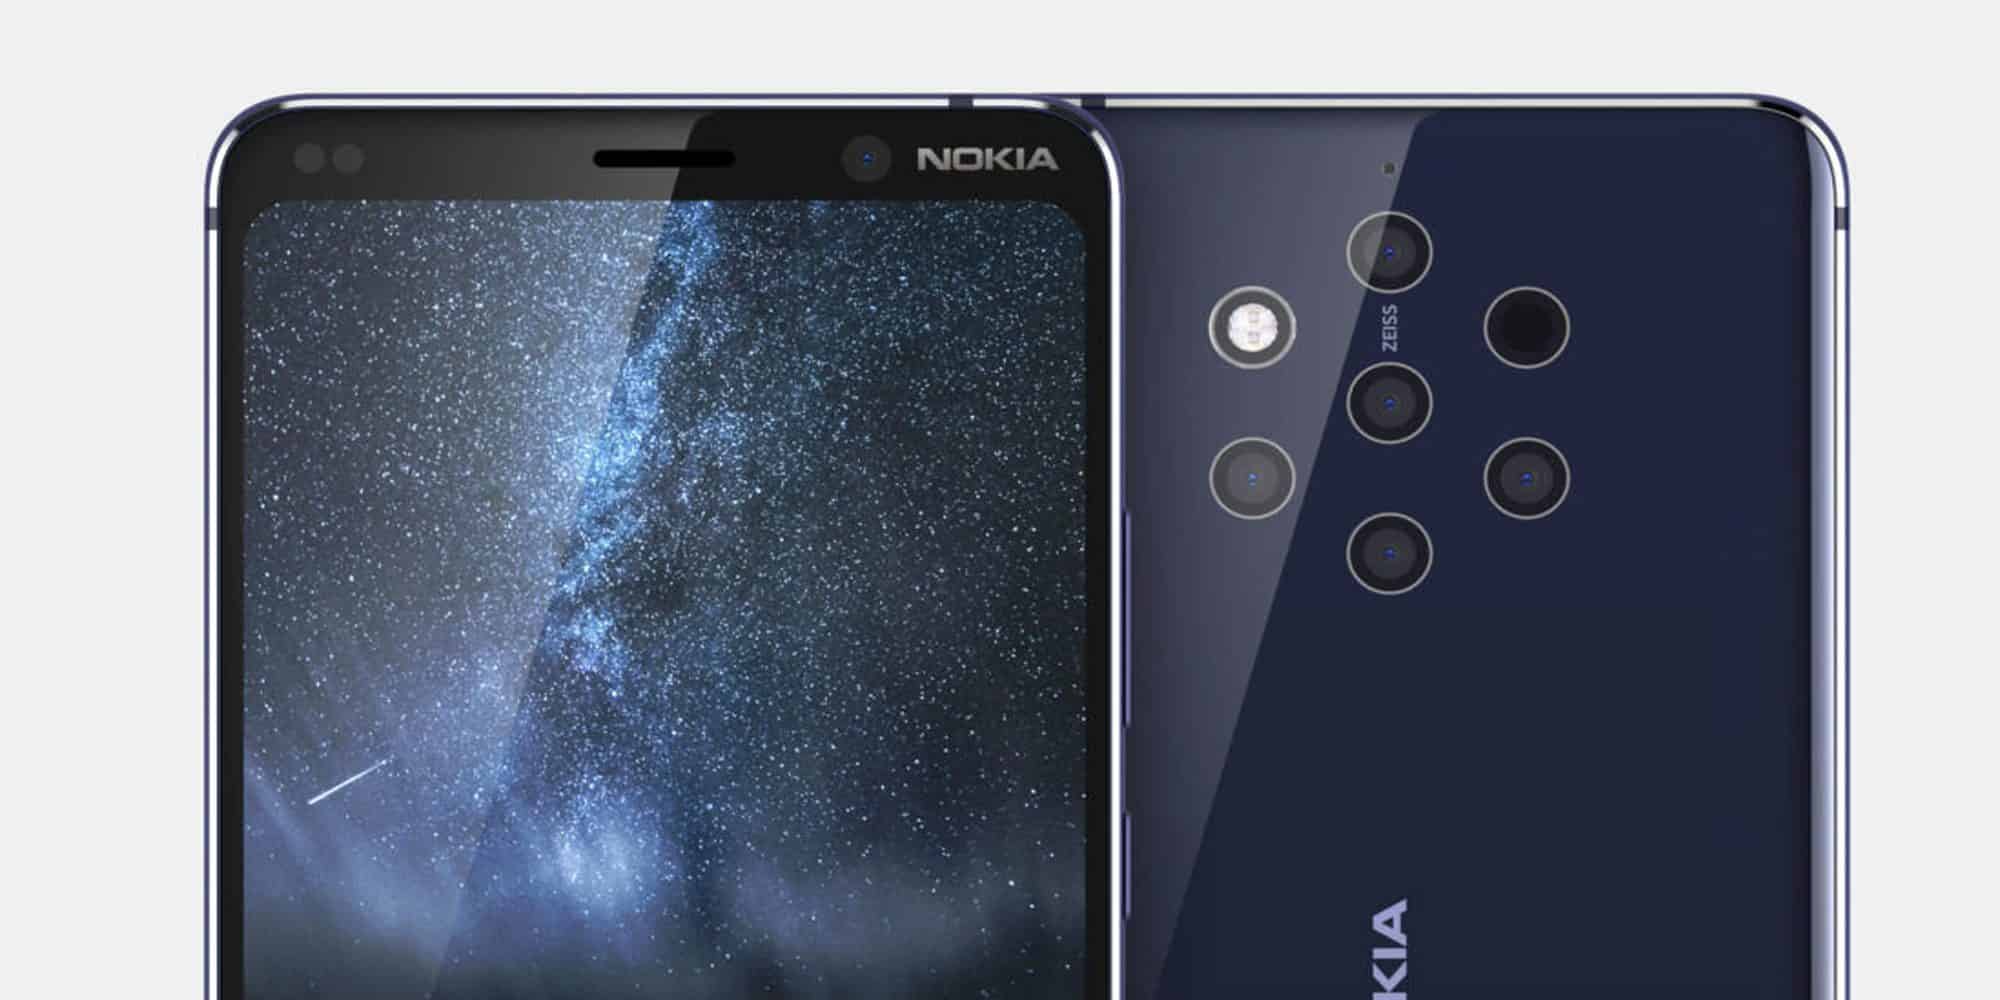 Teléfono Nokia 9 trae 5 cámaras en su espalda ¡Filtrado!